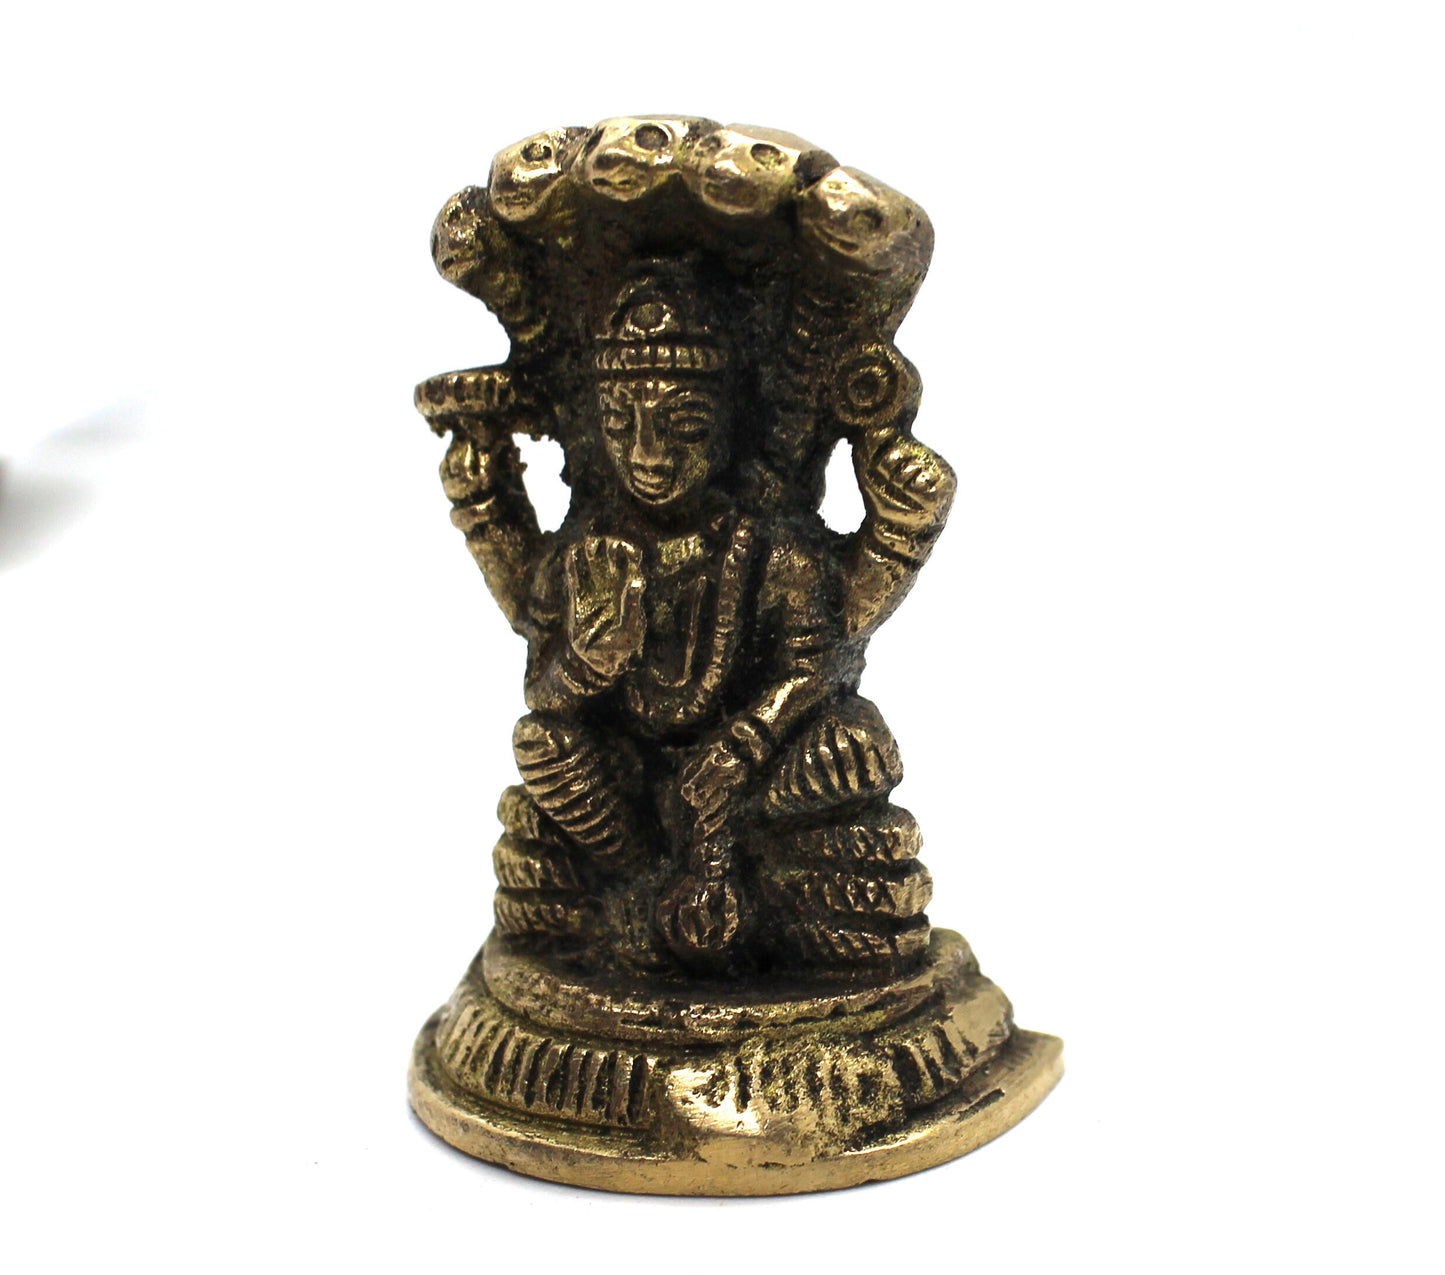 Lord Vishnu Idol Brass, 4.5 cm SMALL size Brass Lord Vishnu Narayan Statue, Hindu God Vishnu Bhagwan ki Murti, Lord Vishnu brass statuee